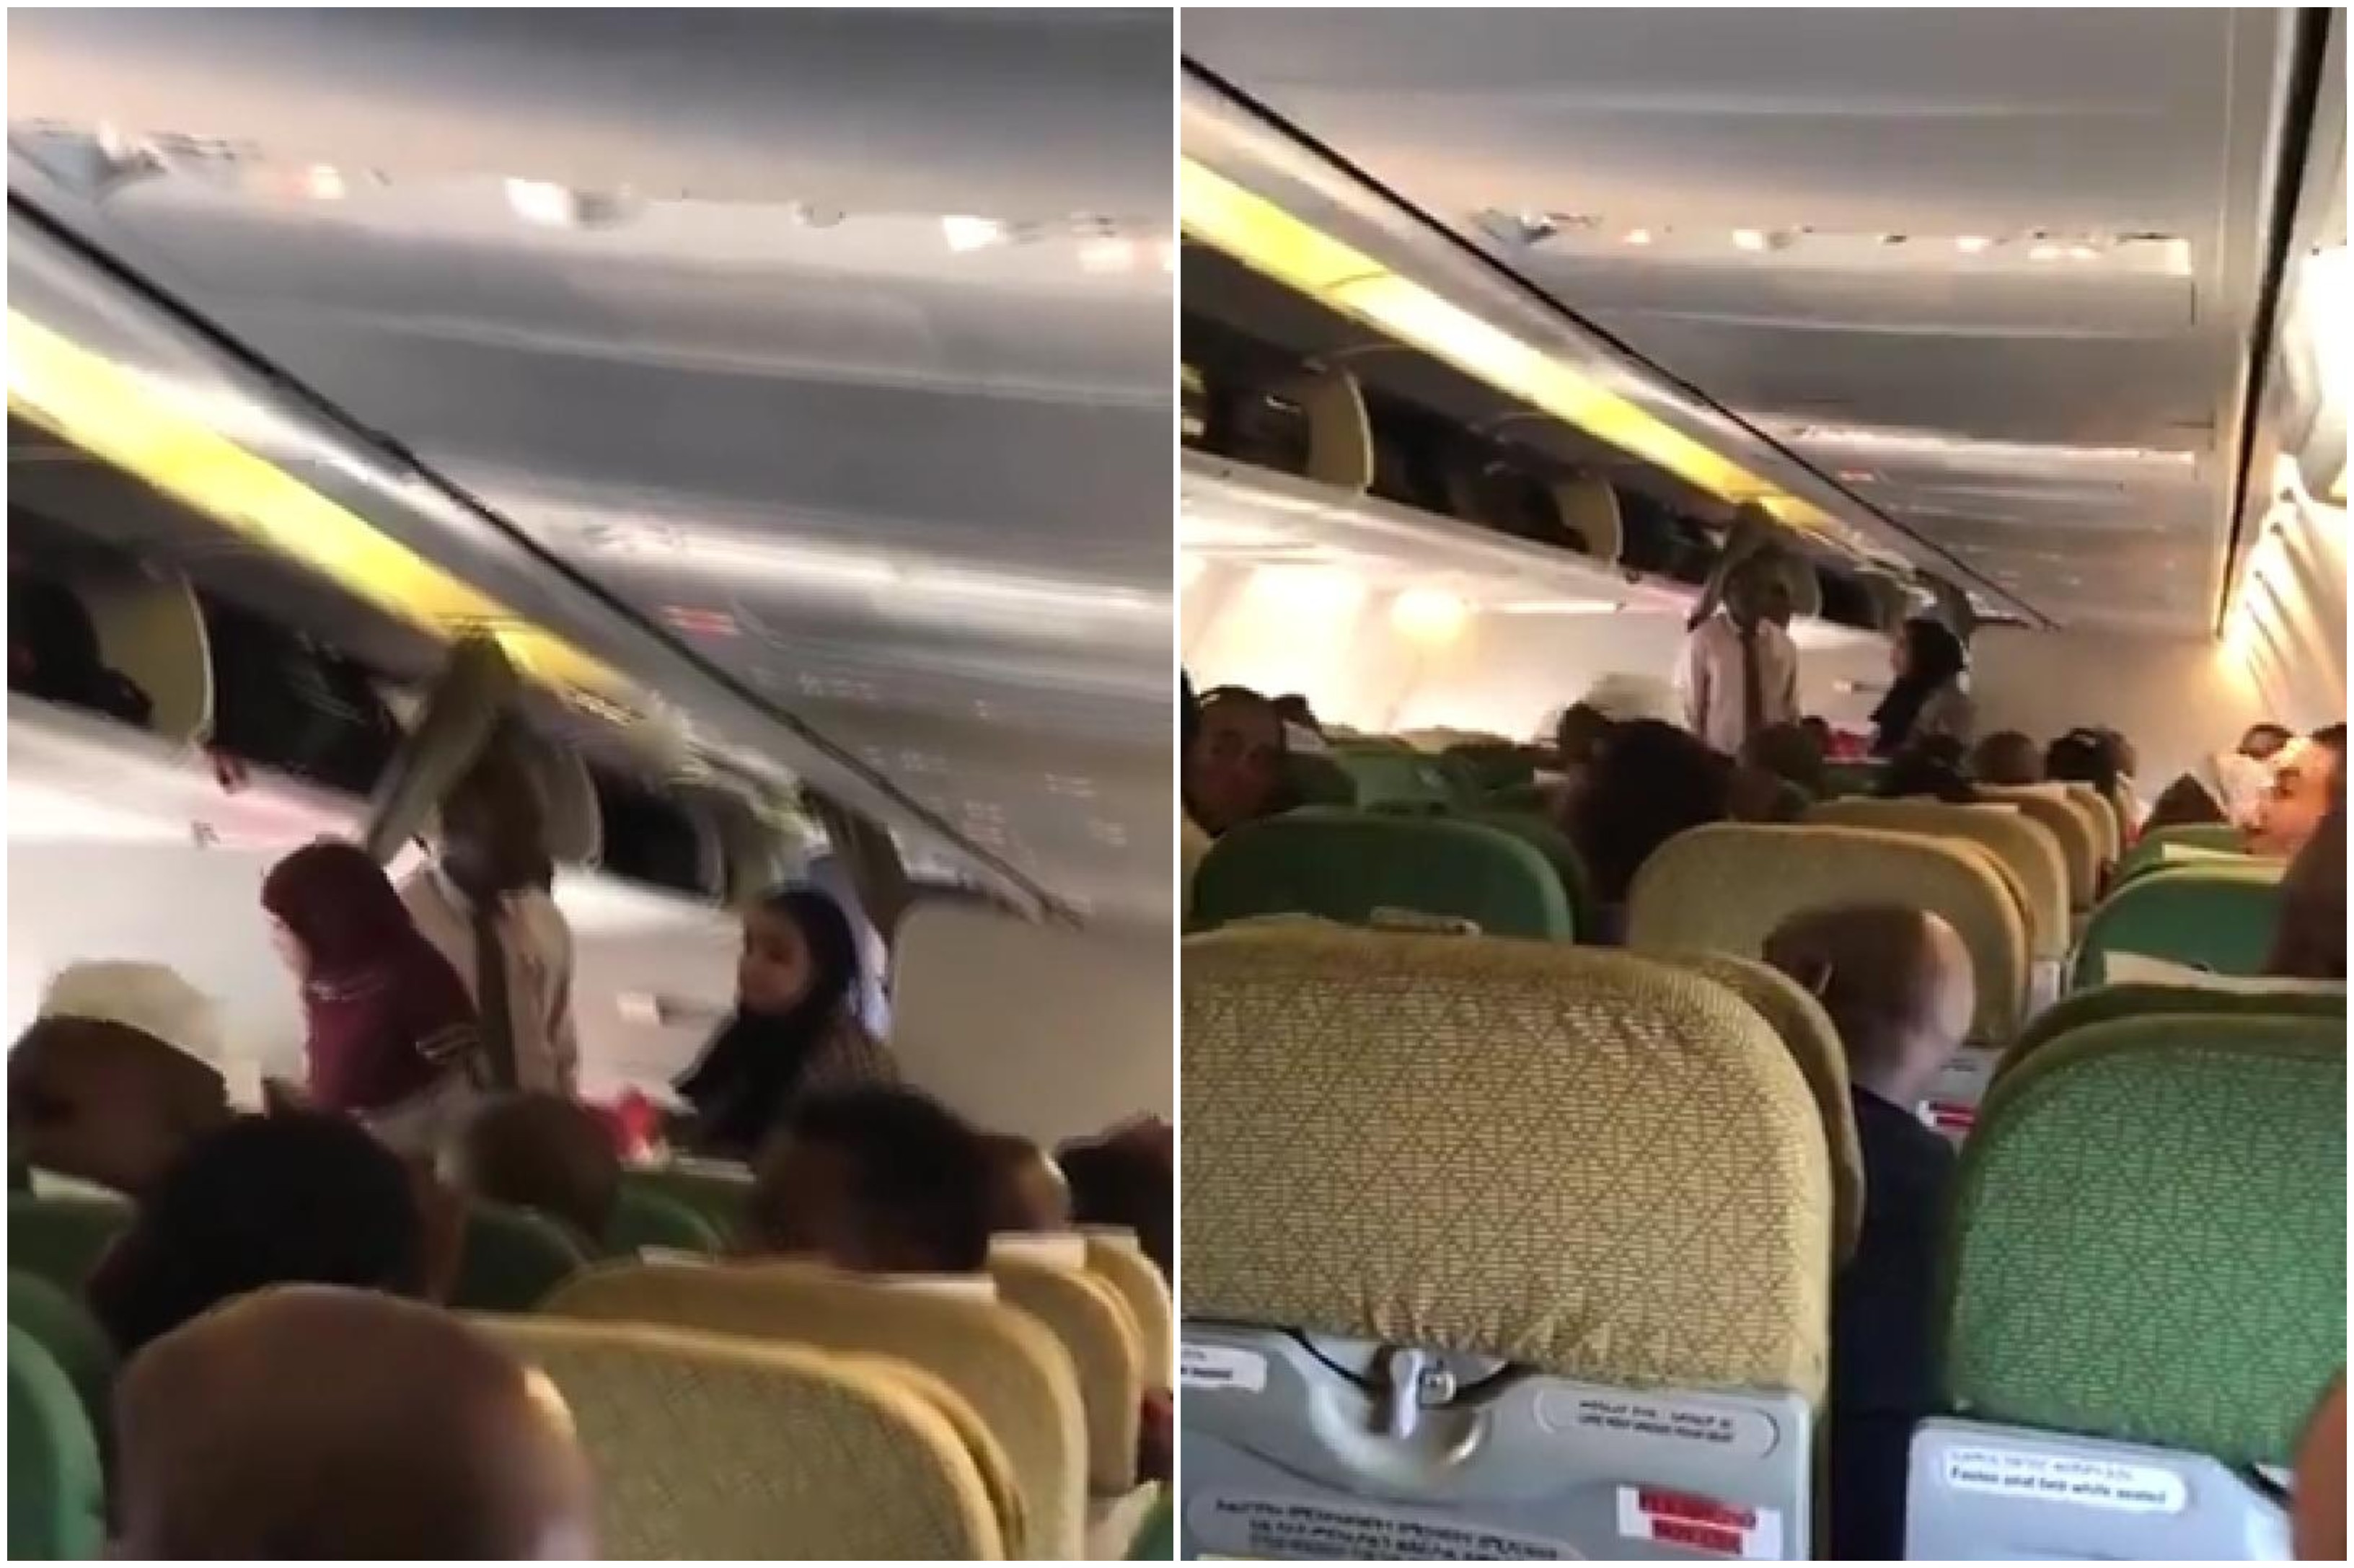 بالفيديو/ وفاة أحد المسافرين على متن الطائرة الإثيوبية في مطار أديس أبابا بسبب تسرب غاز داخل الطائرة وإخلاء جميع الركاب